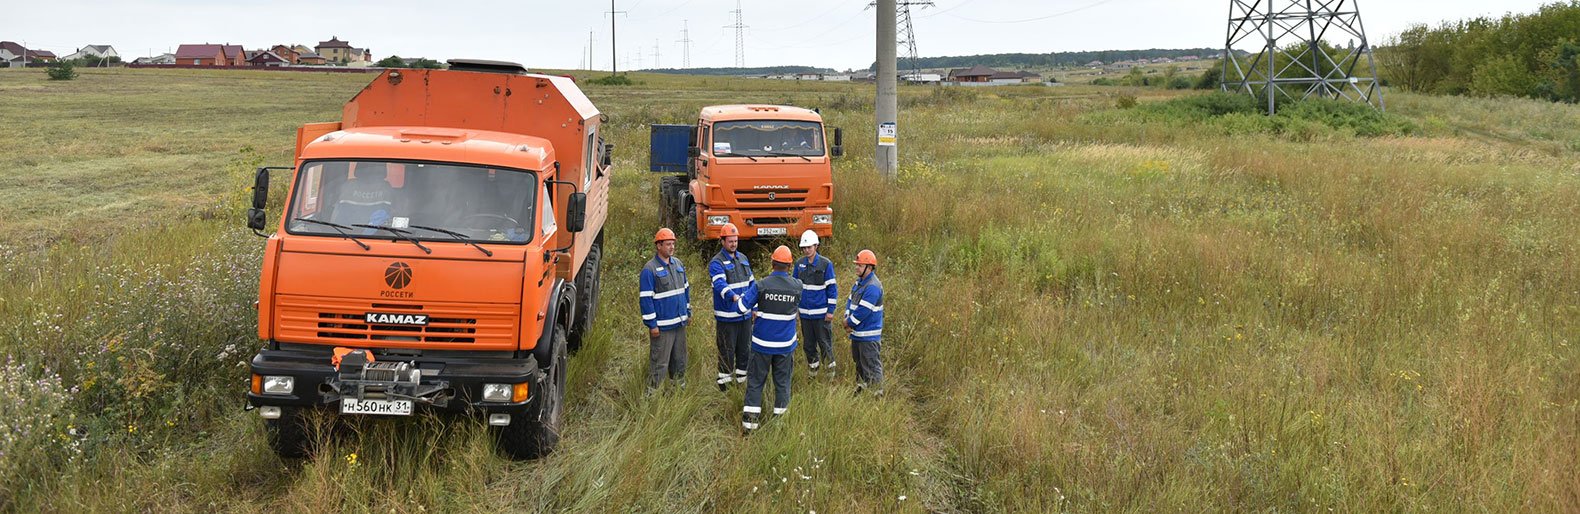 Белгородские энергетики готовы к ликвидации аварийных ситуаций в сложных погодных условиях